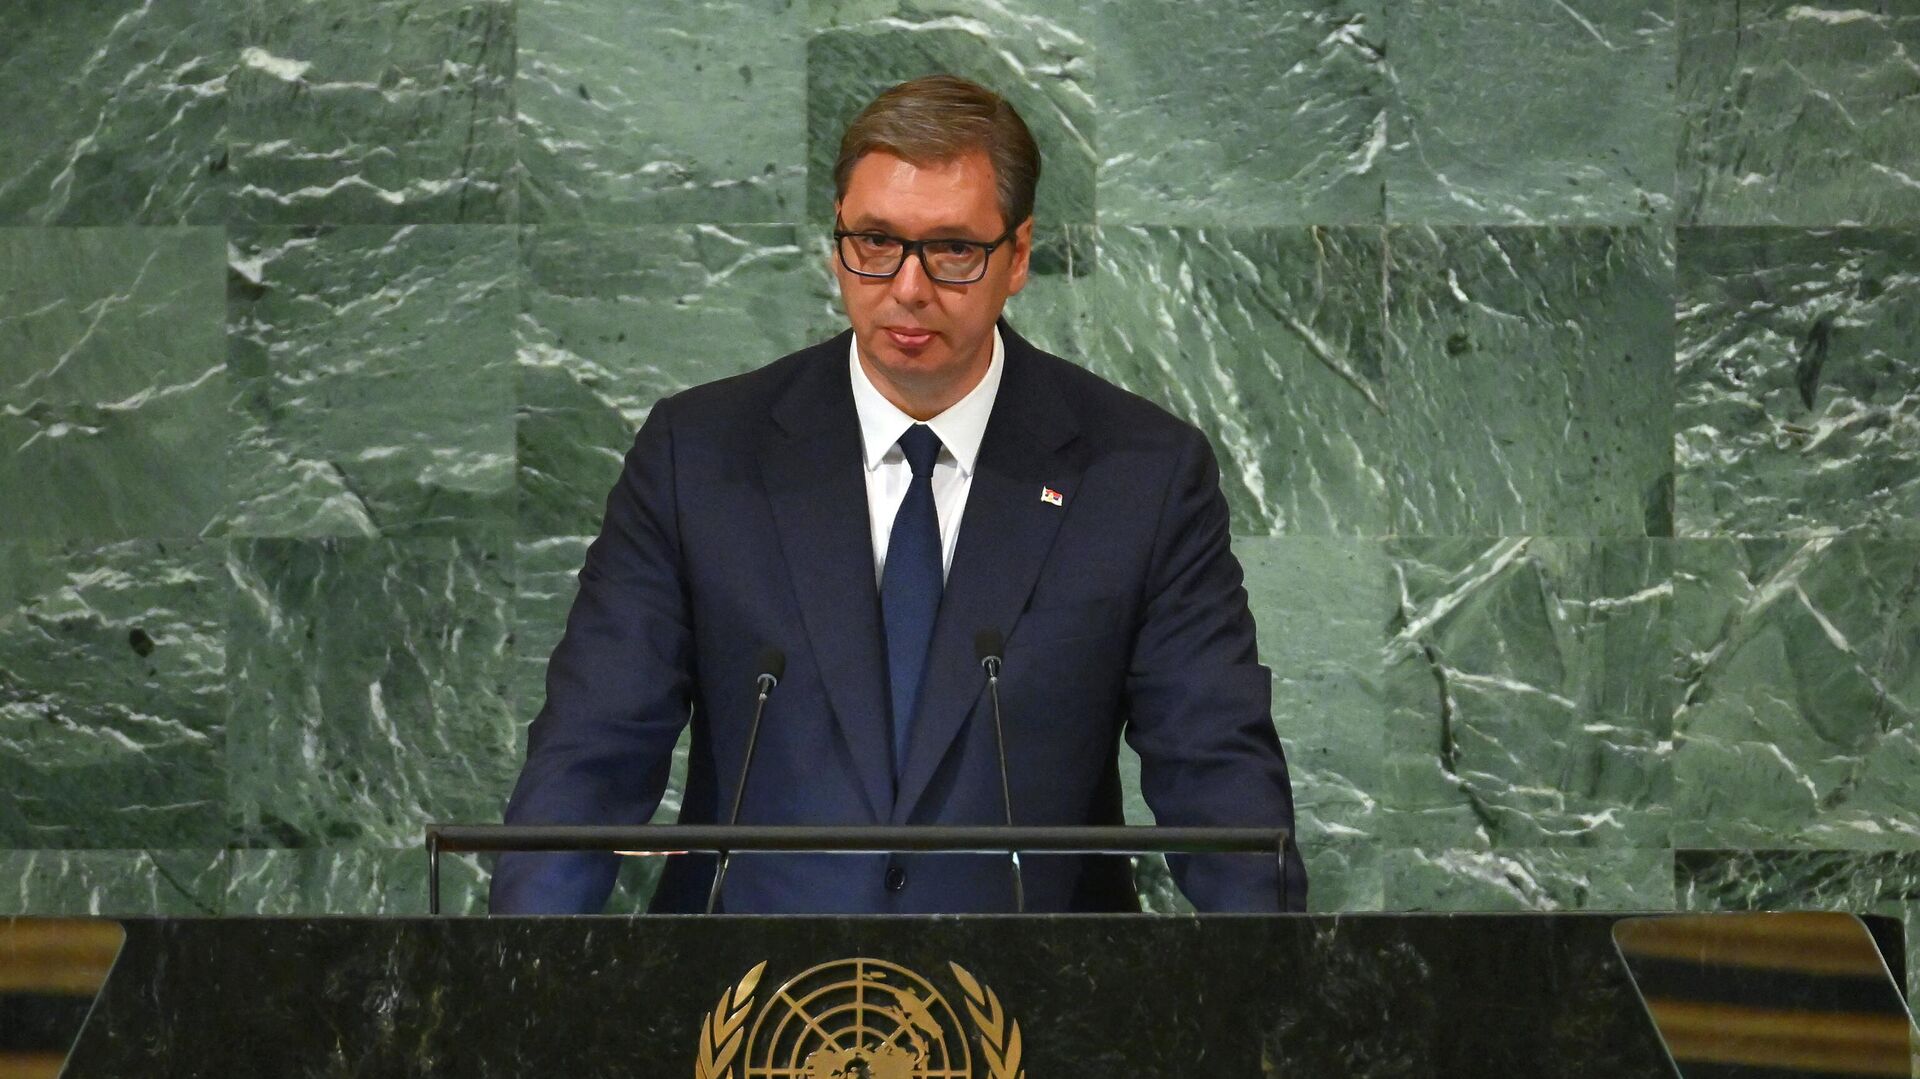 Вучич: Сербия благодарна США за инвестиции, но против резолюции по Сребренице на ГА ООН